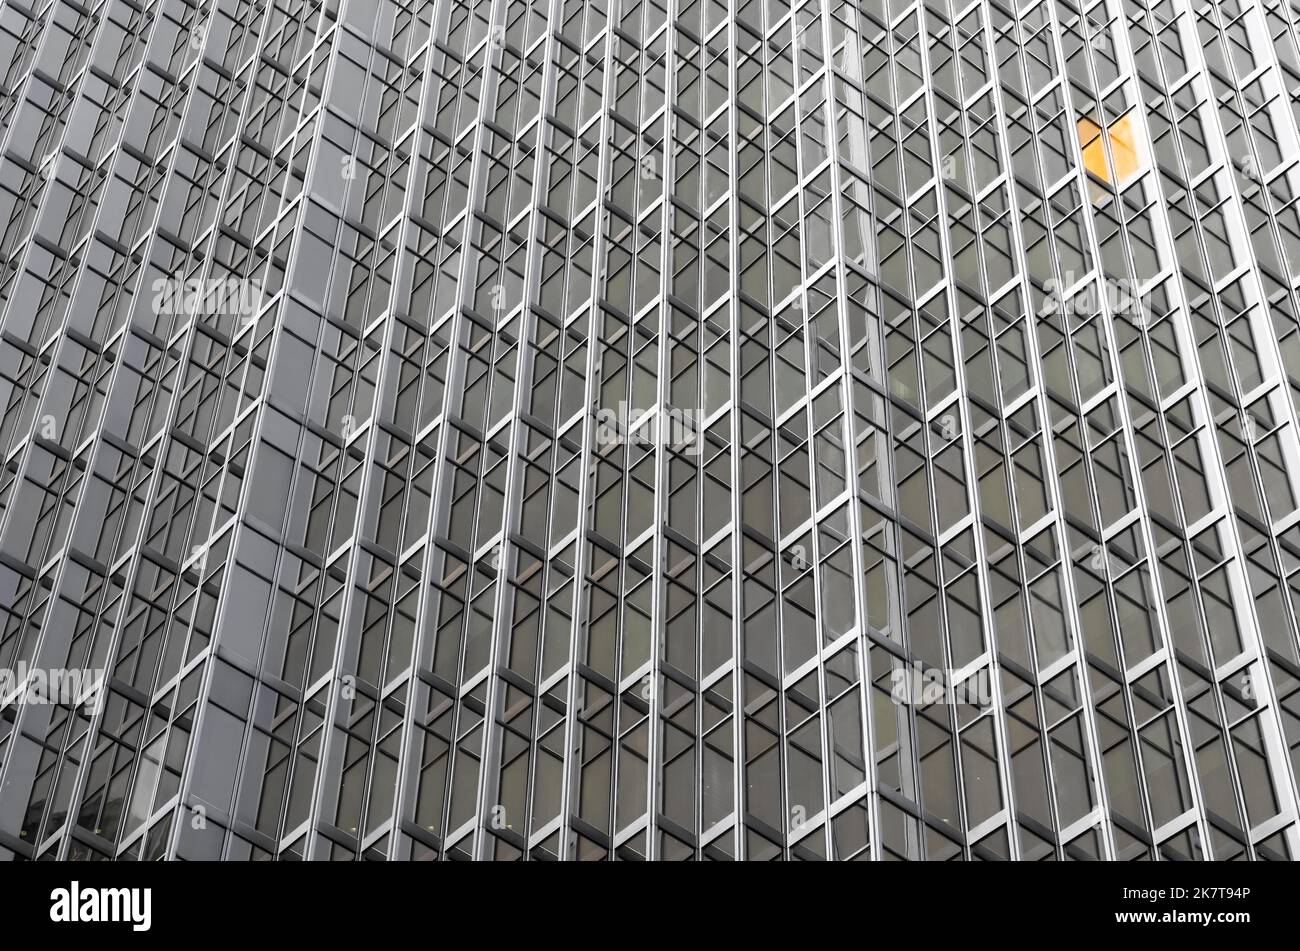 Schwarz-Weiß - entkoketes Metall- und Glasgebäude mit gelbem Fenster - Wolkenkratzer, Business Center. Ein Abschnitt farbig Stockfoto